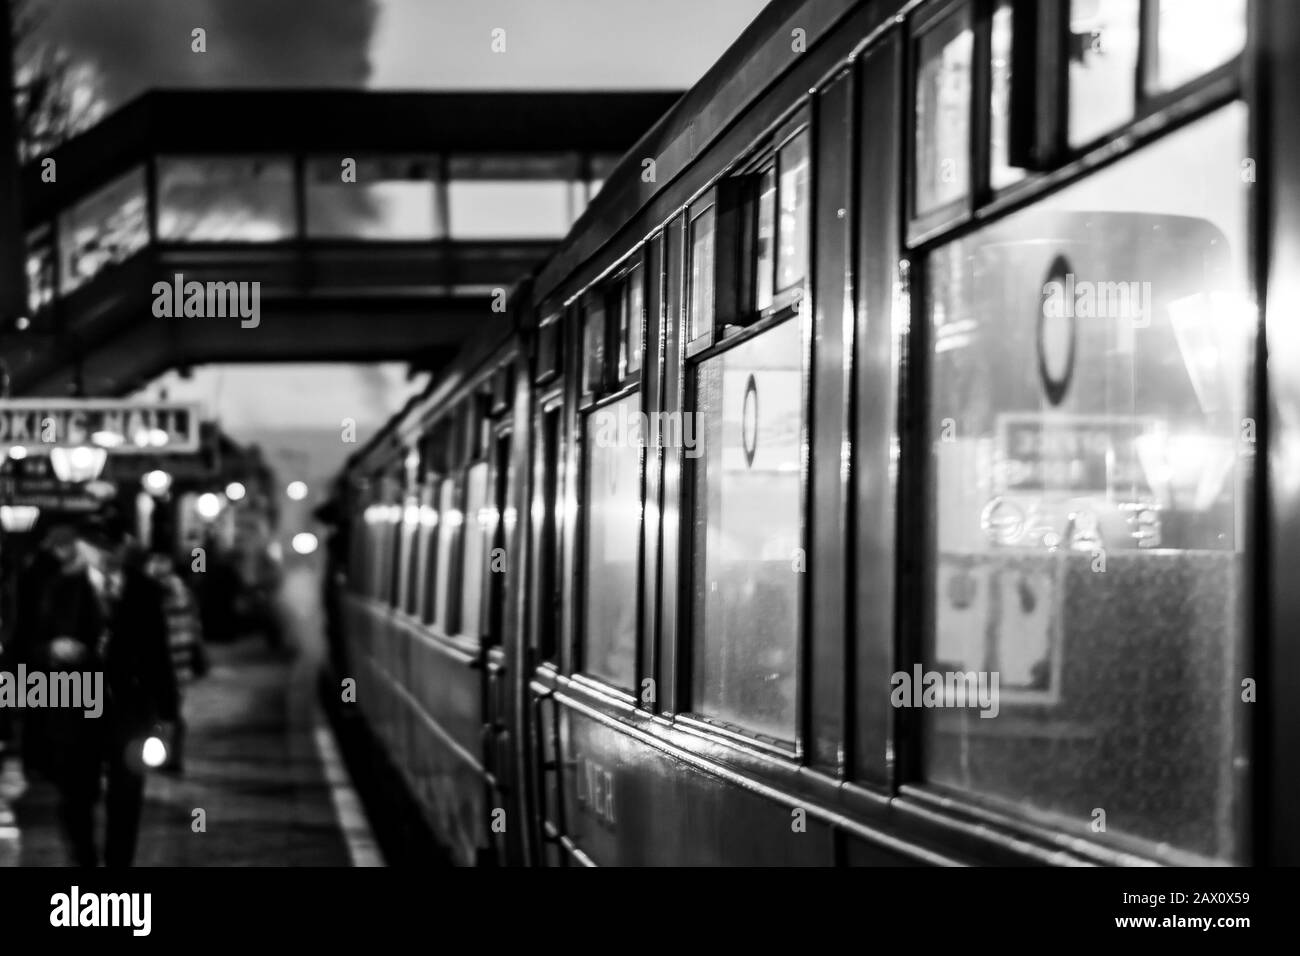 Bianco e nero d'atmosfera, monopatena, stazione dei treni vintage Bewdley, ferrovia storica di Severn Valley, Worcestershire UK, serata invernale. Foto Stock